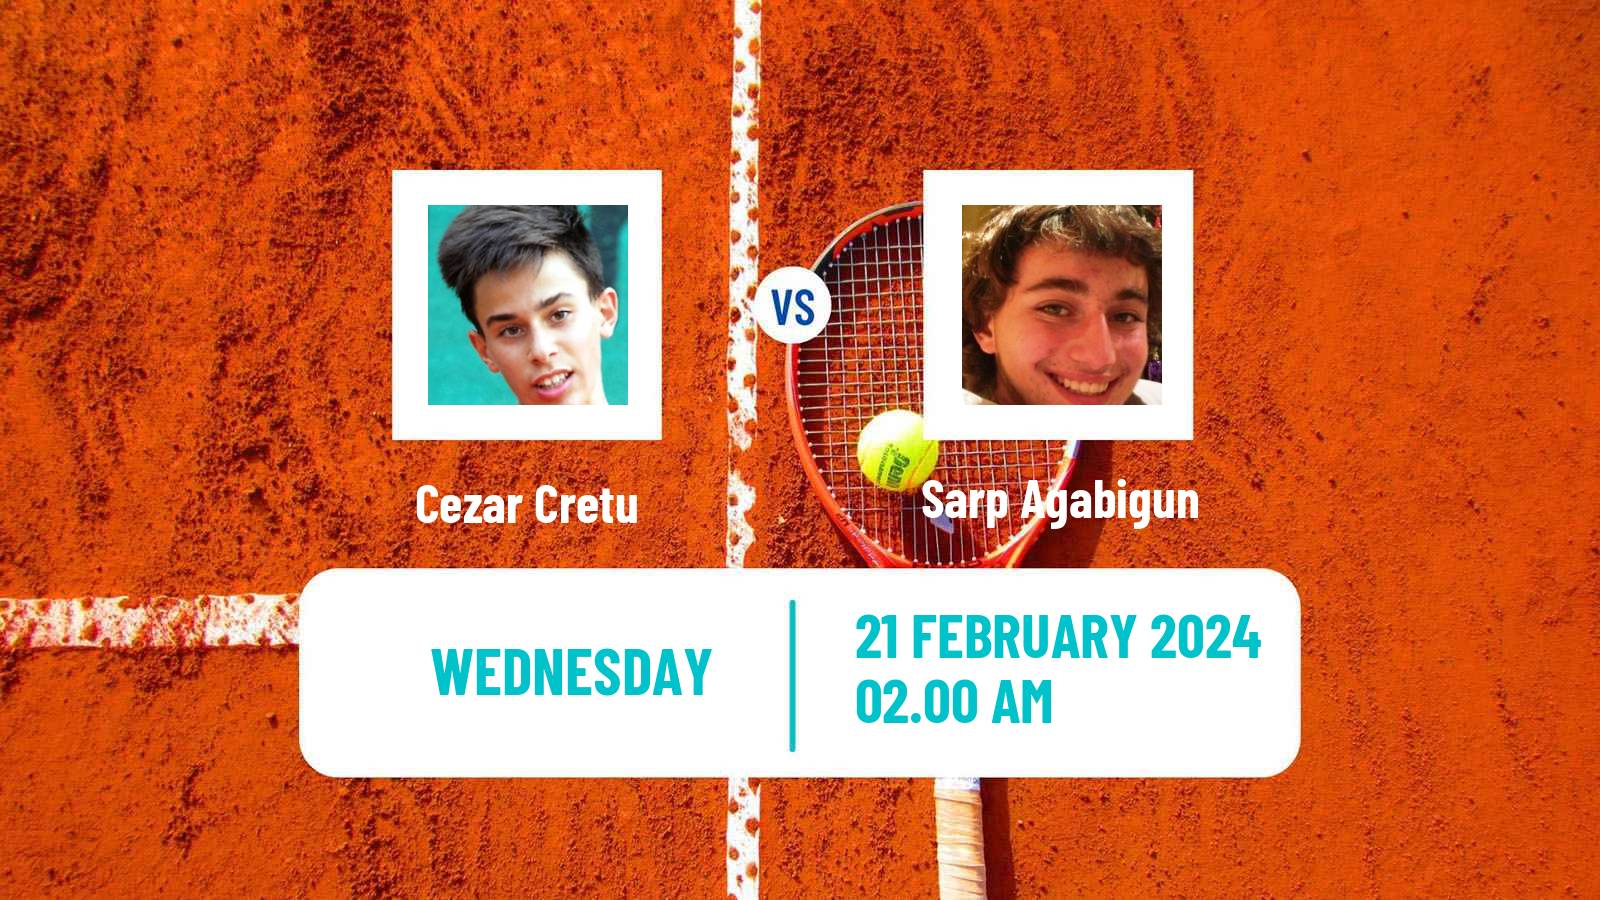 Tennis ITF M25 Antalya 4 Men Cezar Cretu - Sarp Agabigun